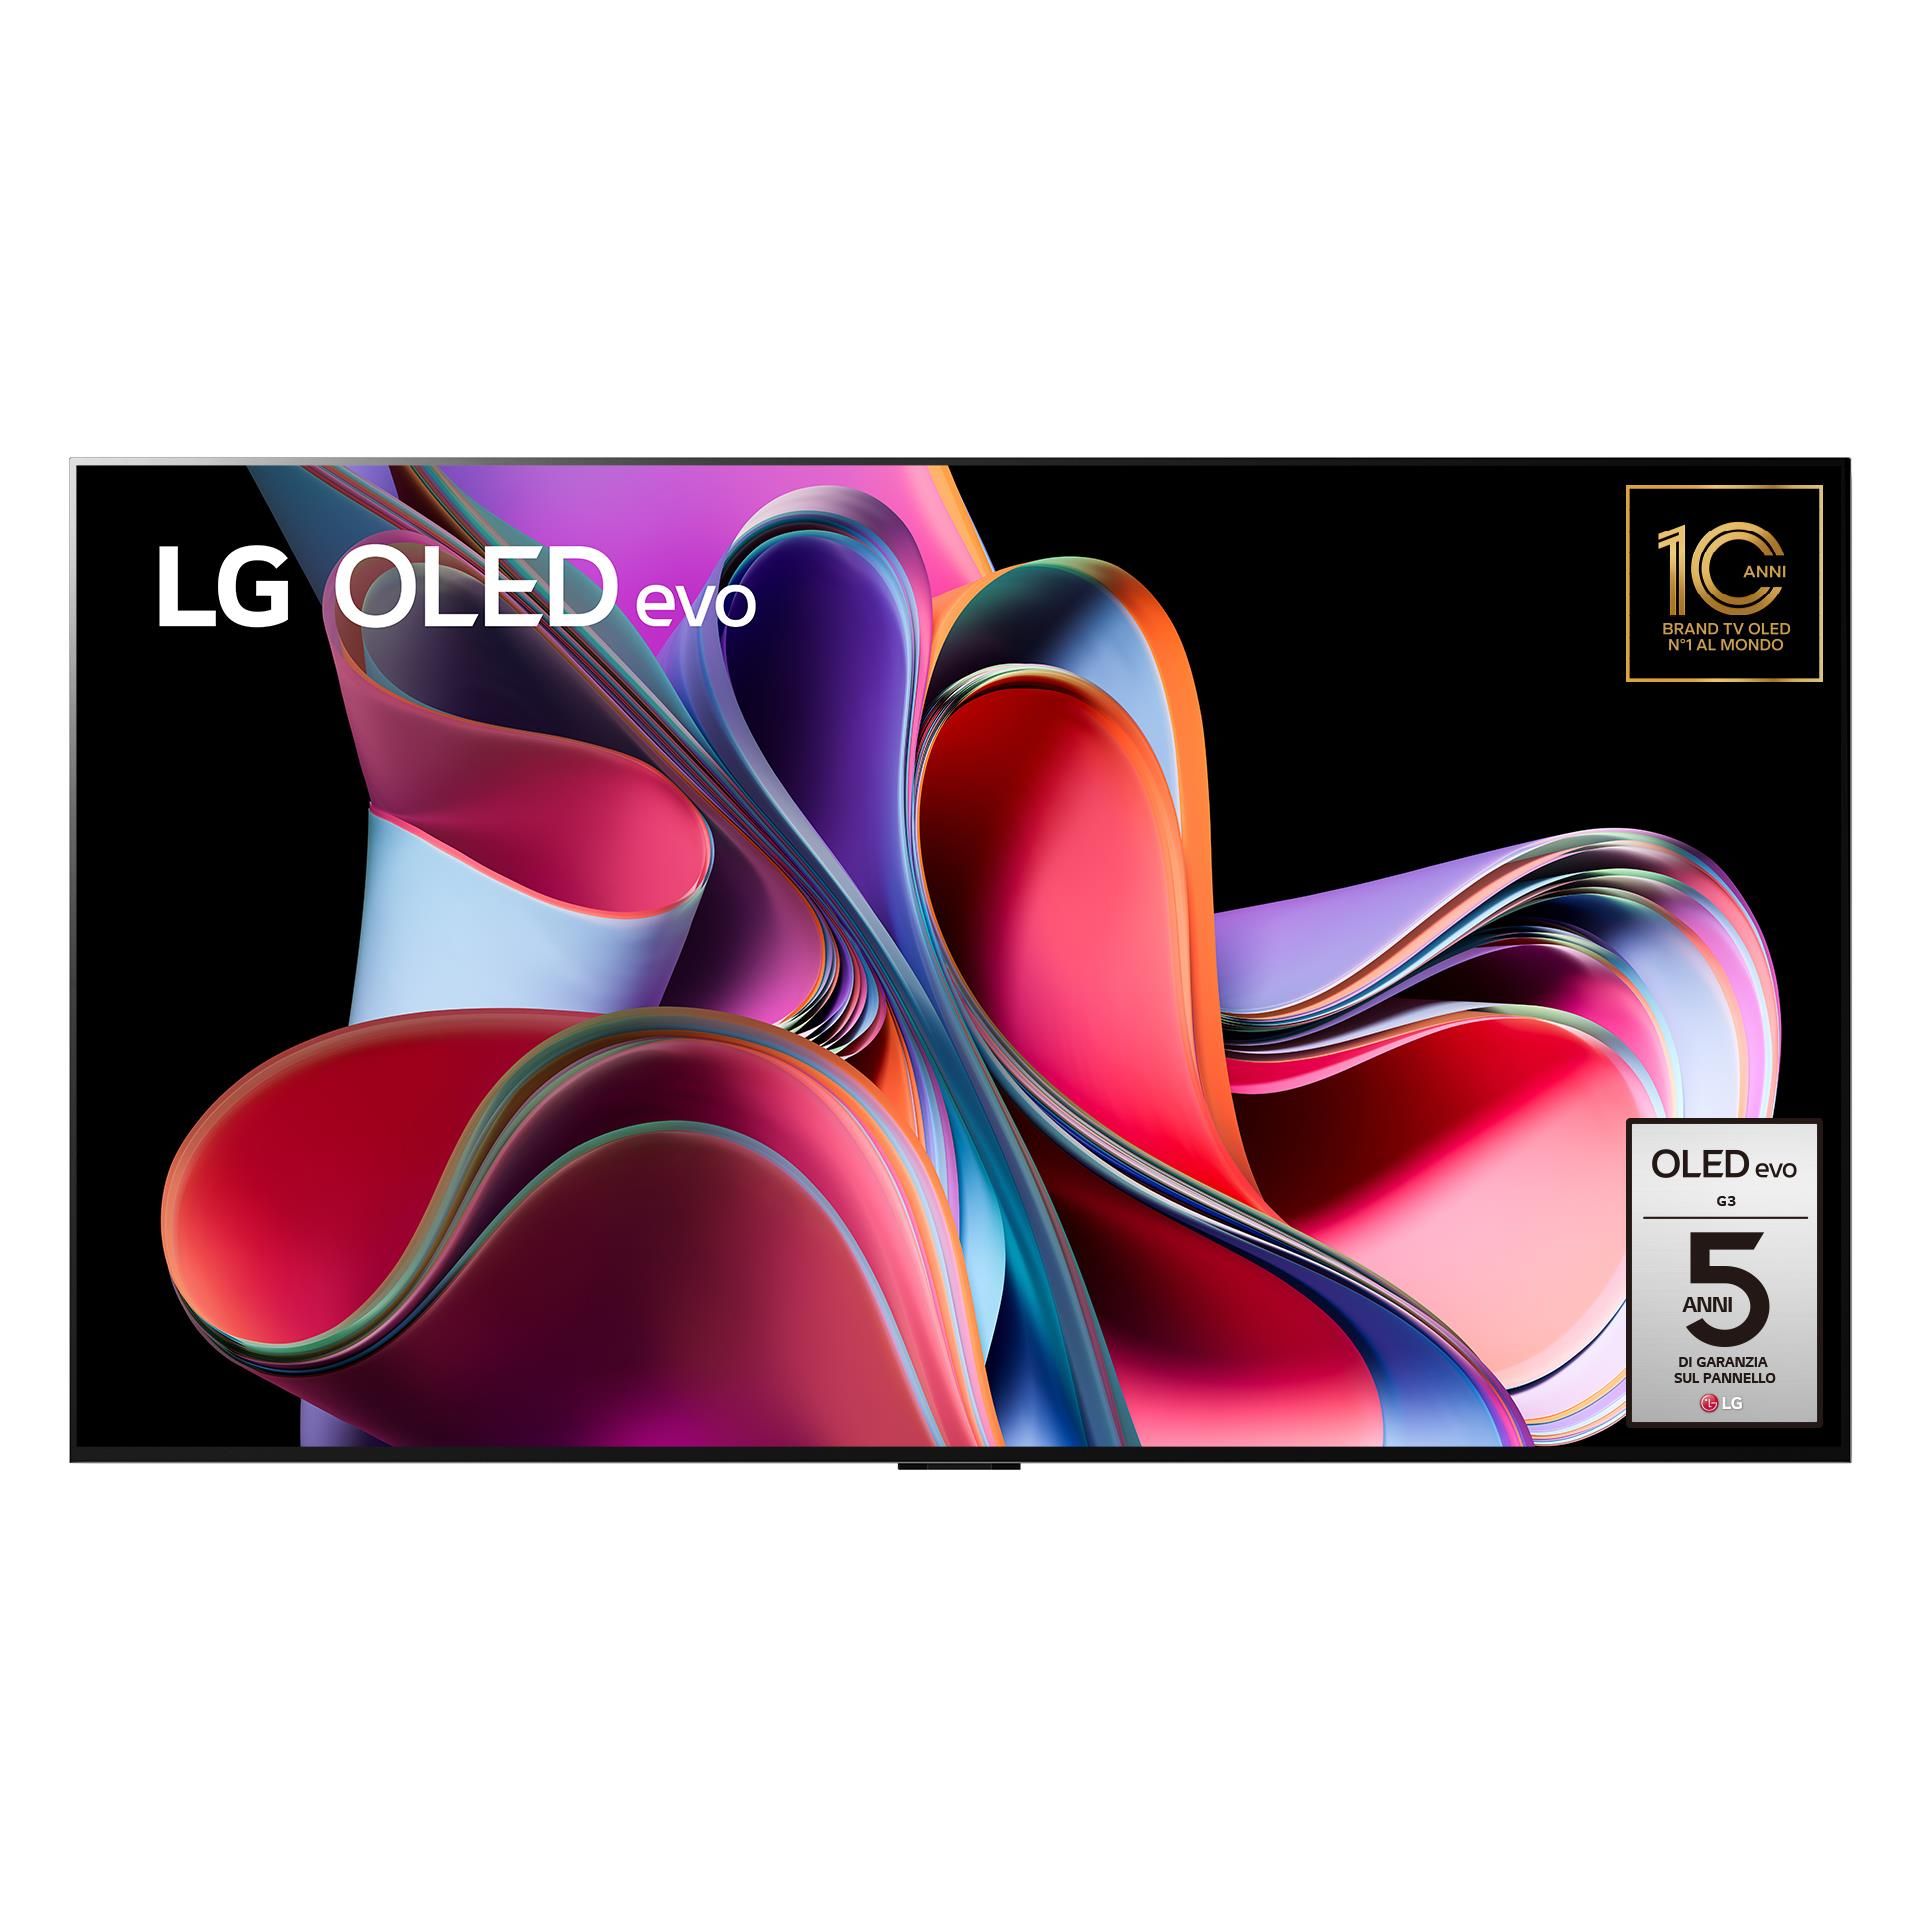 LG OLED Evo 83